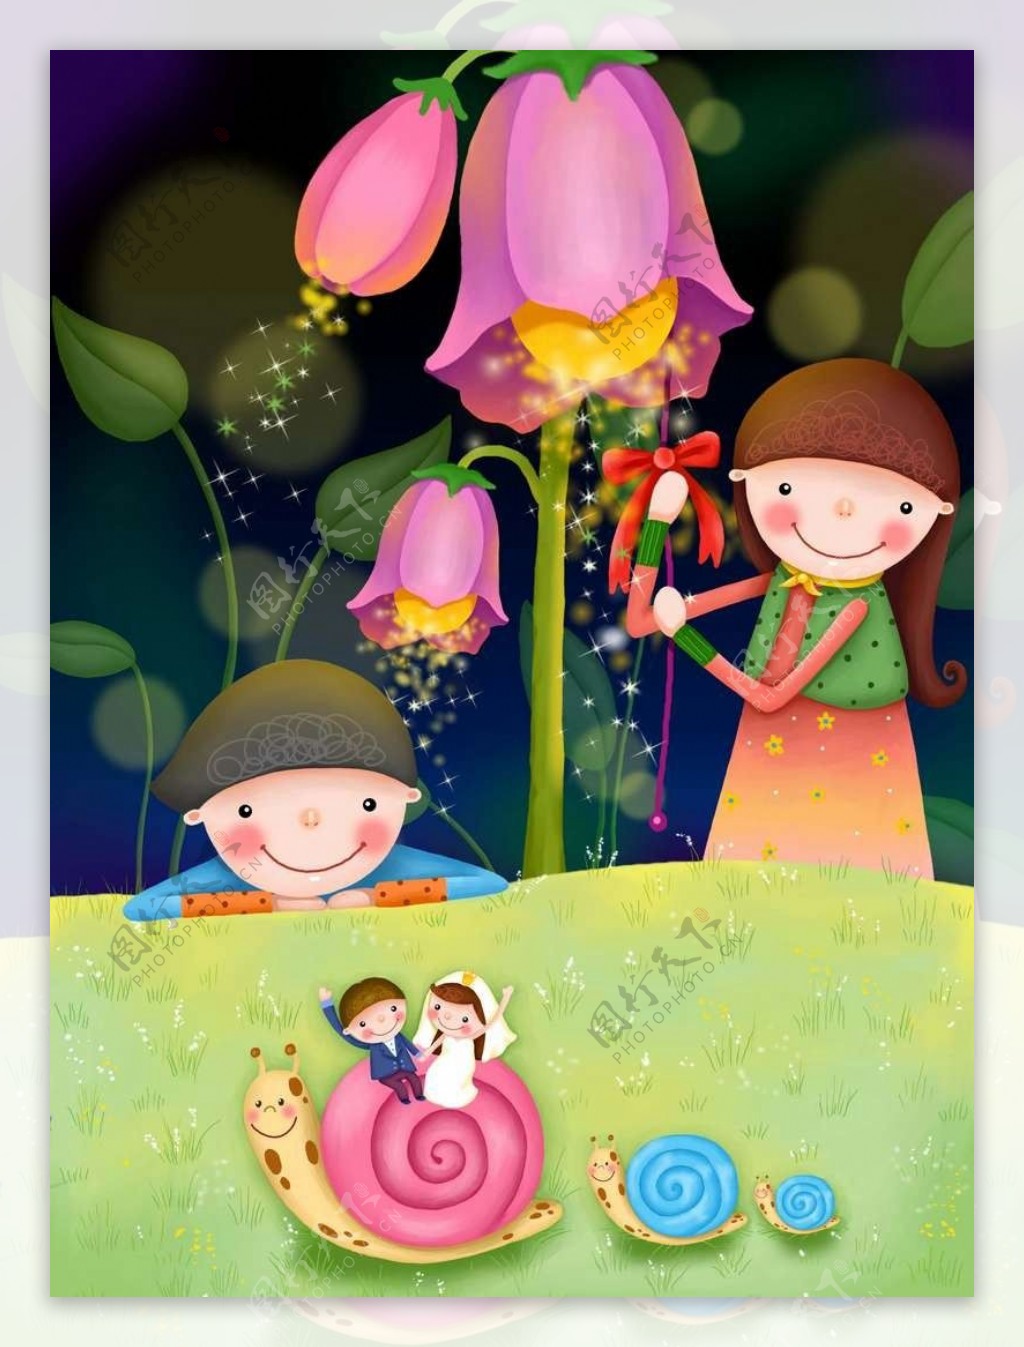 粉色花朵下的孩子和蜗牛